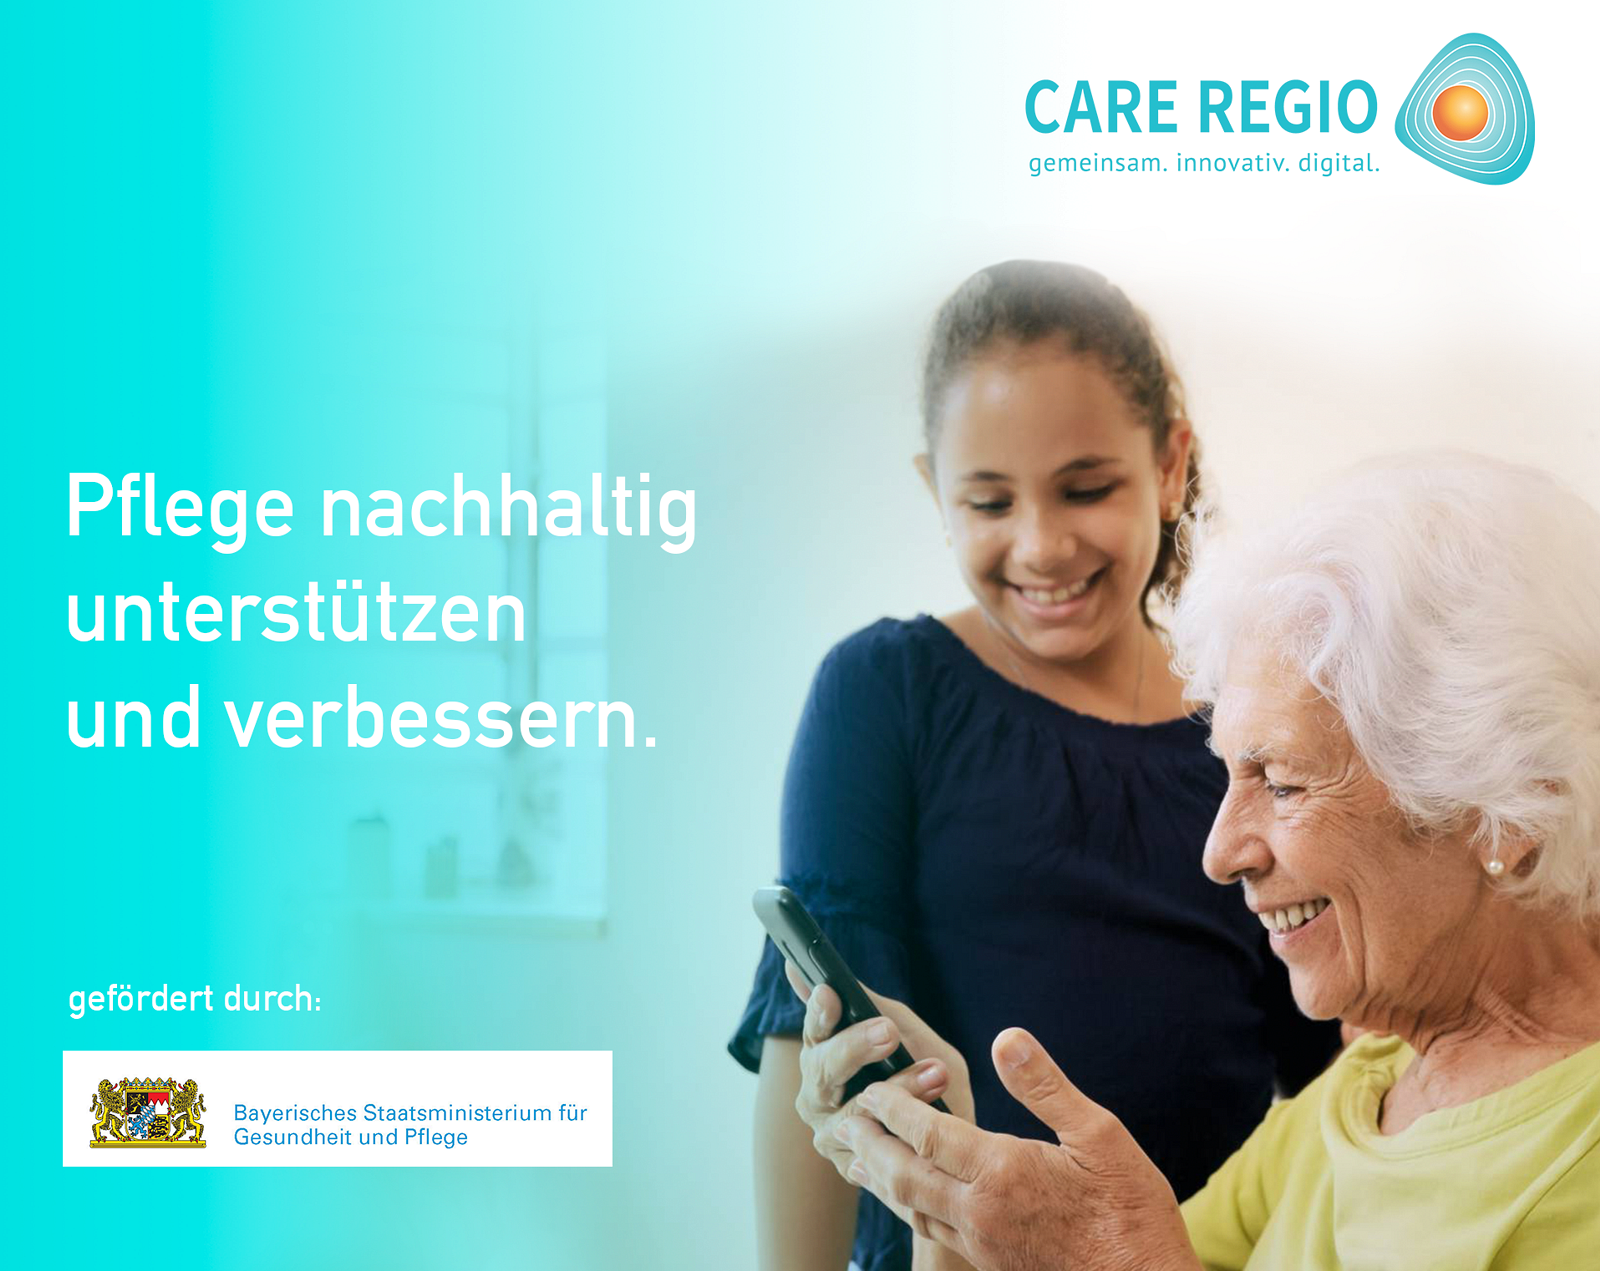 CARE REGIO – Pflege nachhaltig unterstützen und verbessern.